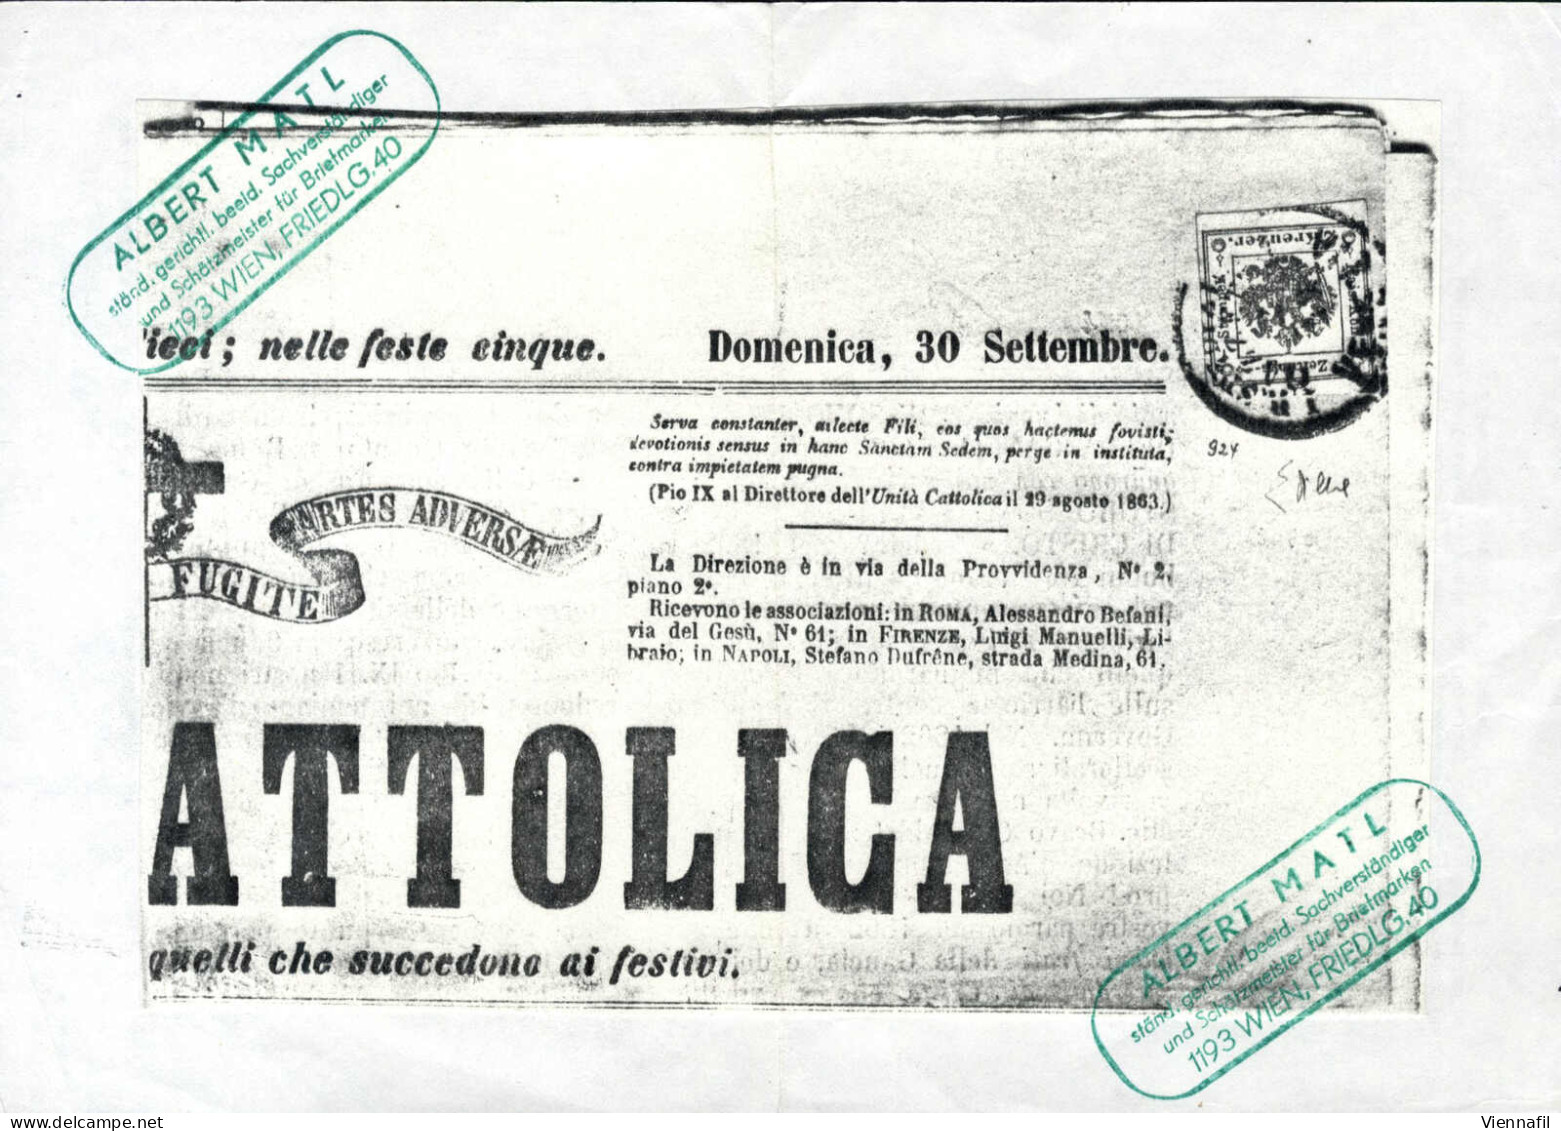 Cover 1866, Giornale Unità Cattolica Del 30 Settembre 1866 Affrancato Con 2 Kreuzer Vermiglio Annullato "I.R. SPEDIZIONE - Lombardy-Venetia